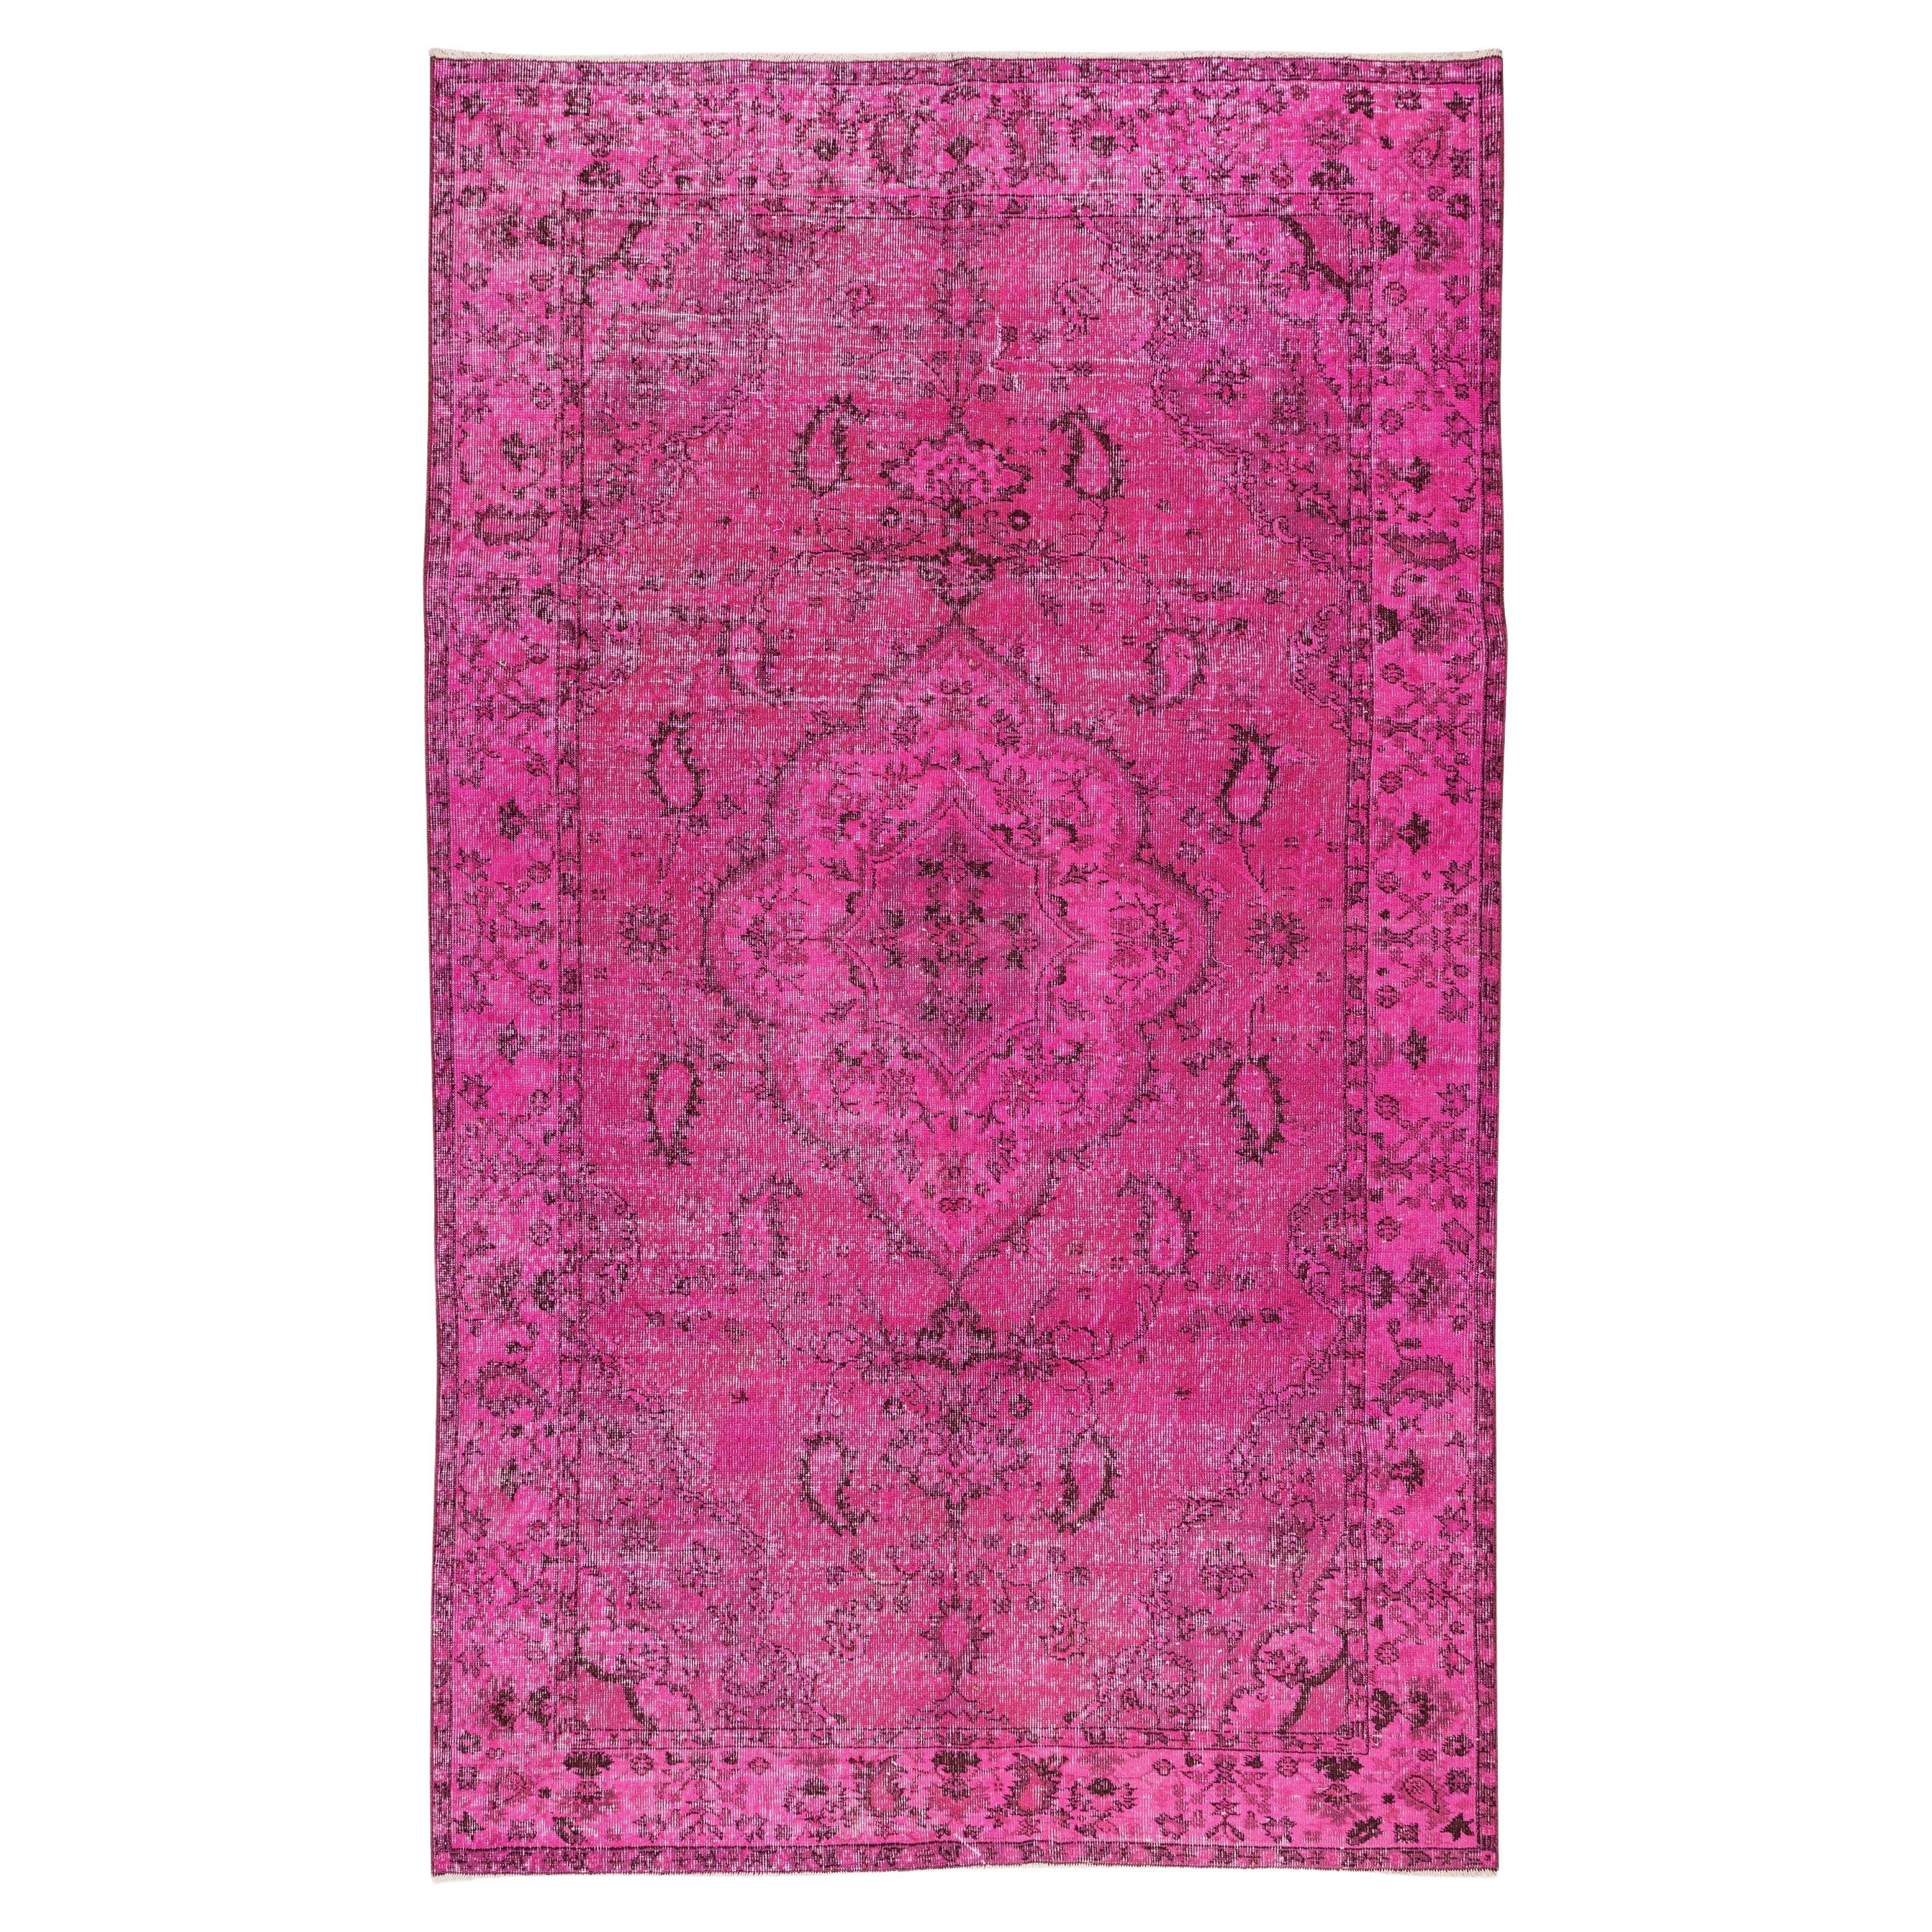 Pink Handmade Turkish Carpet, Modern Rug for Dining Room or Living Room For Sale